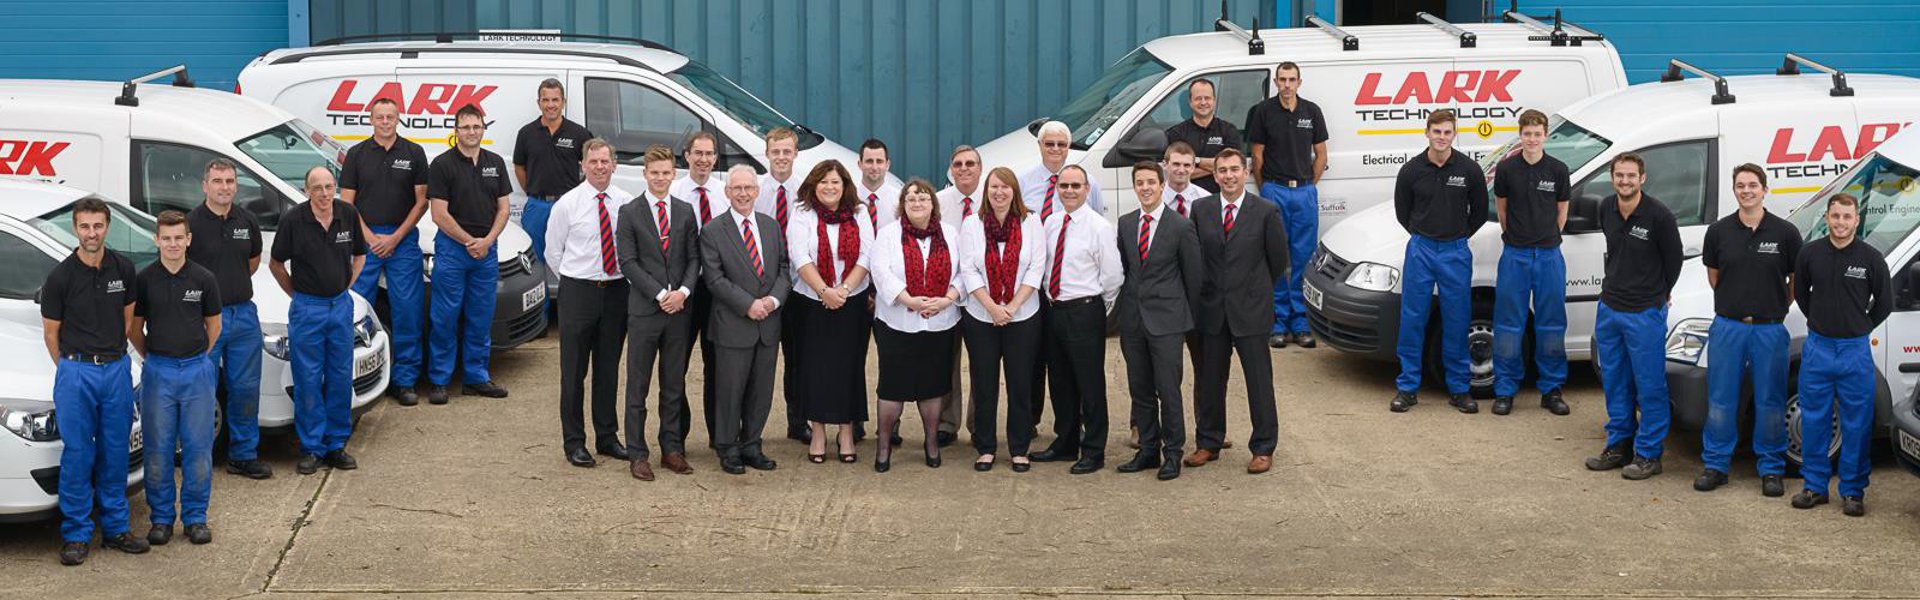 Our Team - Lark Technology Group Ltd. - Suffolk